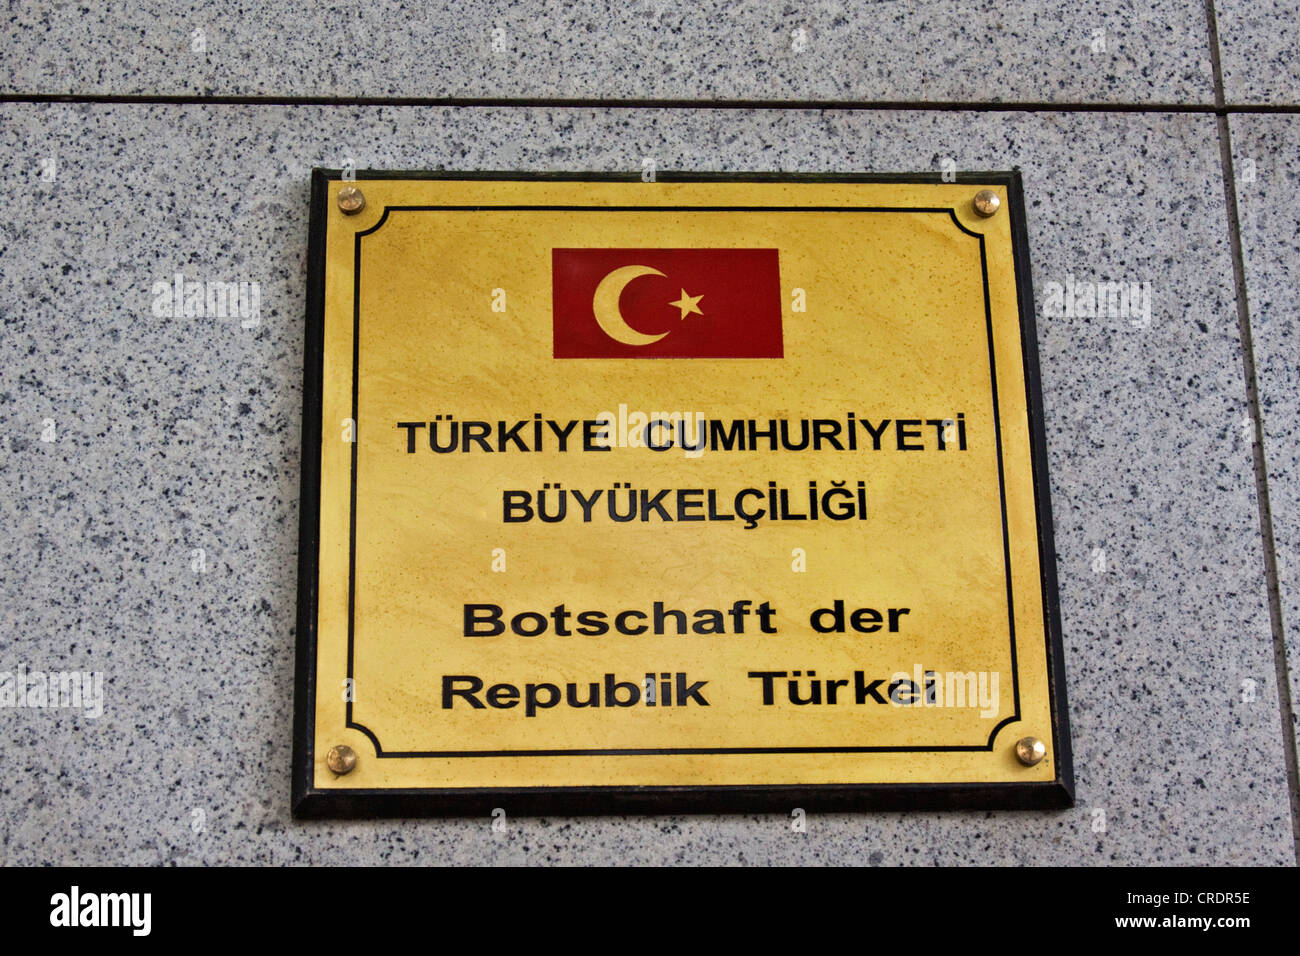 Signer, 'Botschaft der Tuerkei République', l'allemand pour "Ambassade de la République de Turquie", Berlin, Germany, Europe Banque D'Images